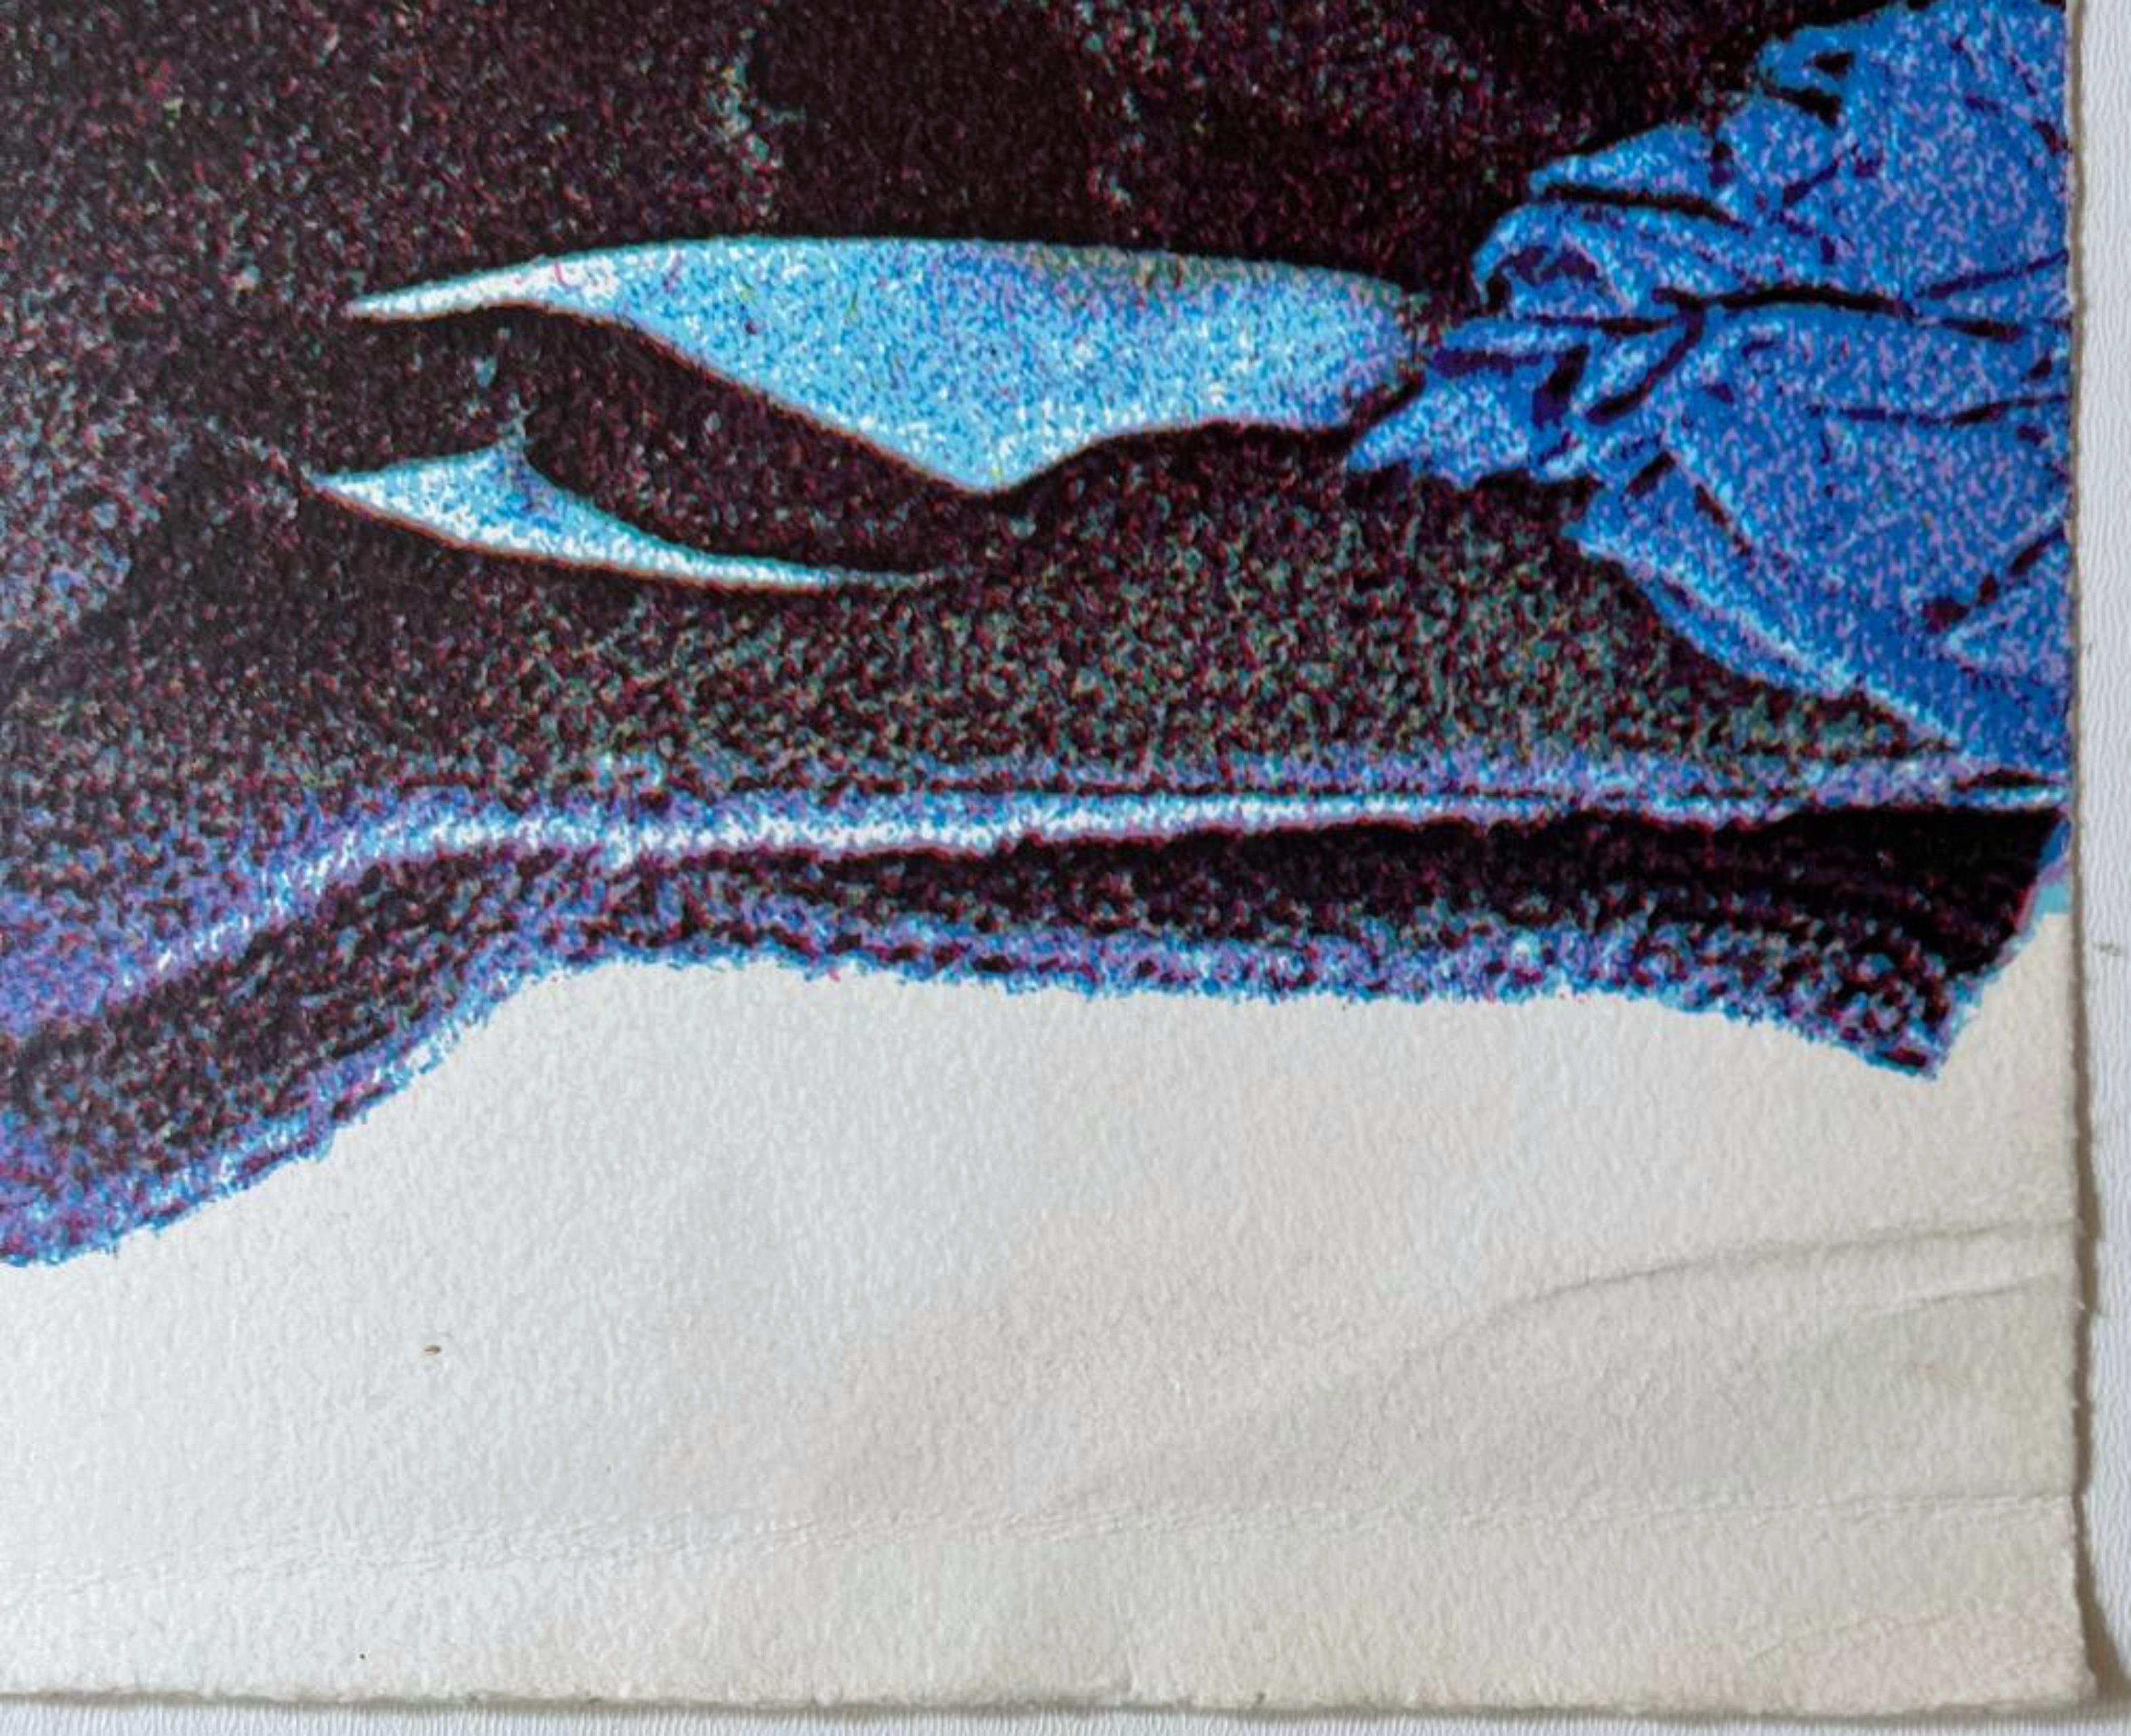 Menashe Kadishman
Vêtements 2, 1973
Sérigraphie sur papier vélin
Signé et numéroté 31/70 au recto.
23 1/4 × 32 1/2 pouces
Edition 31/70
Chris Prater de Kelpra Studio, Kentish Town, Angleterre
Non encadré
Un autre exemple de Clothes 2 se trouve dans